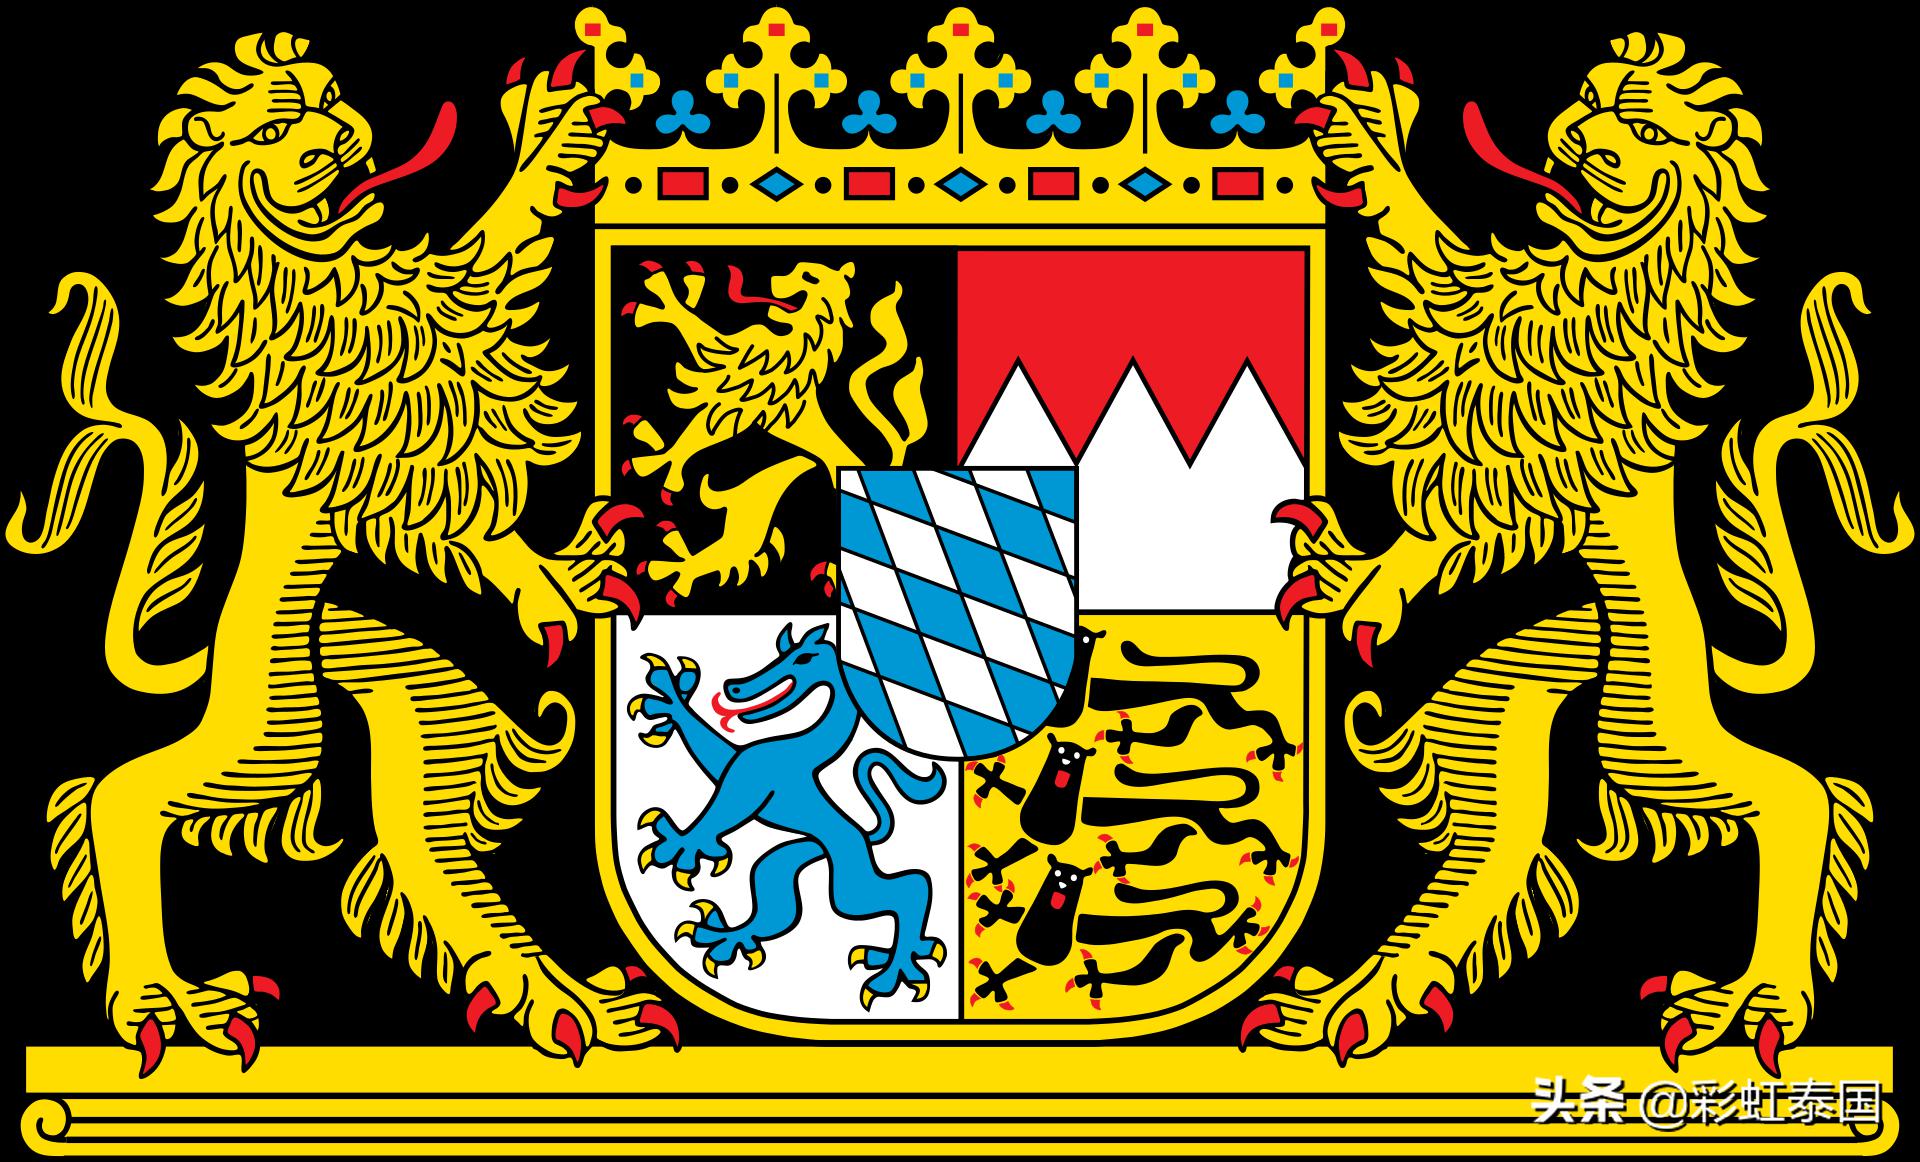 德甲标志大全 德国政府、各州及部门标志、徽章大全(6)